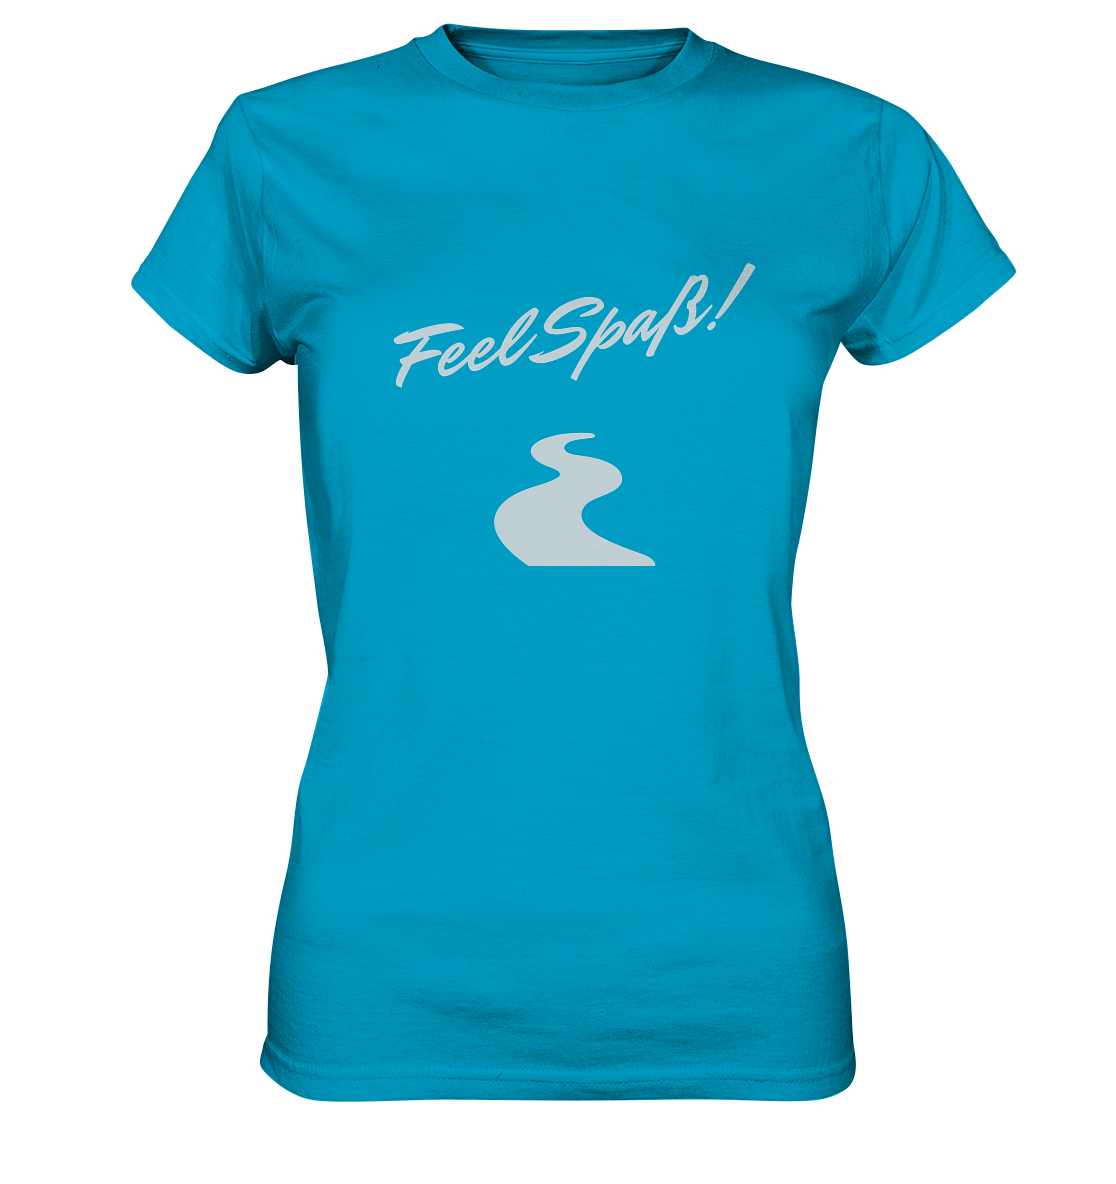 T-Shirt Damen, Rundhals, mit Aufdruck "Feel Spaß!" und kurviger Straße, leuchtend blau